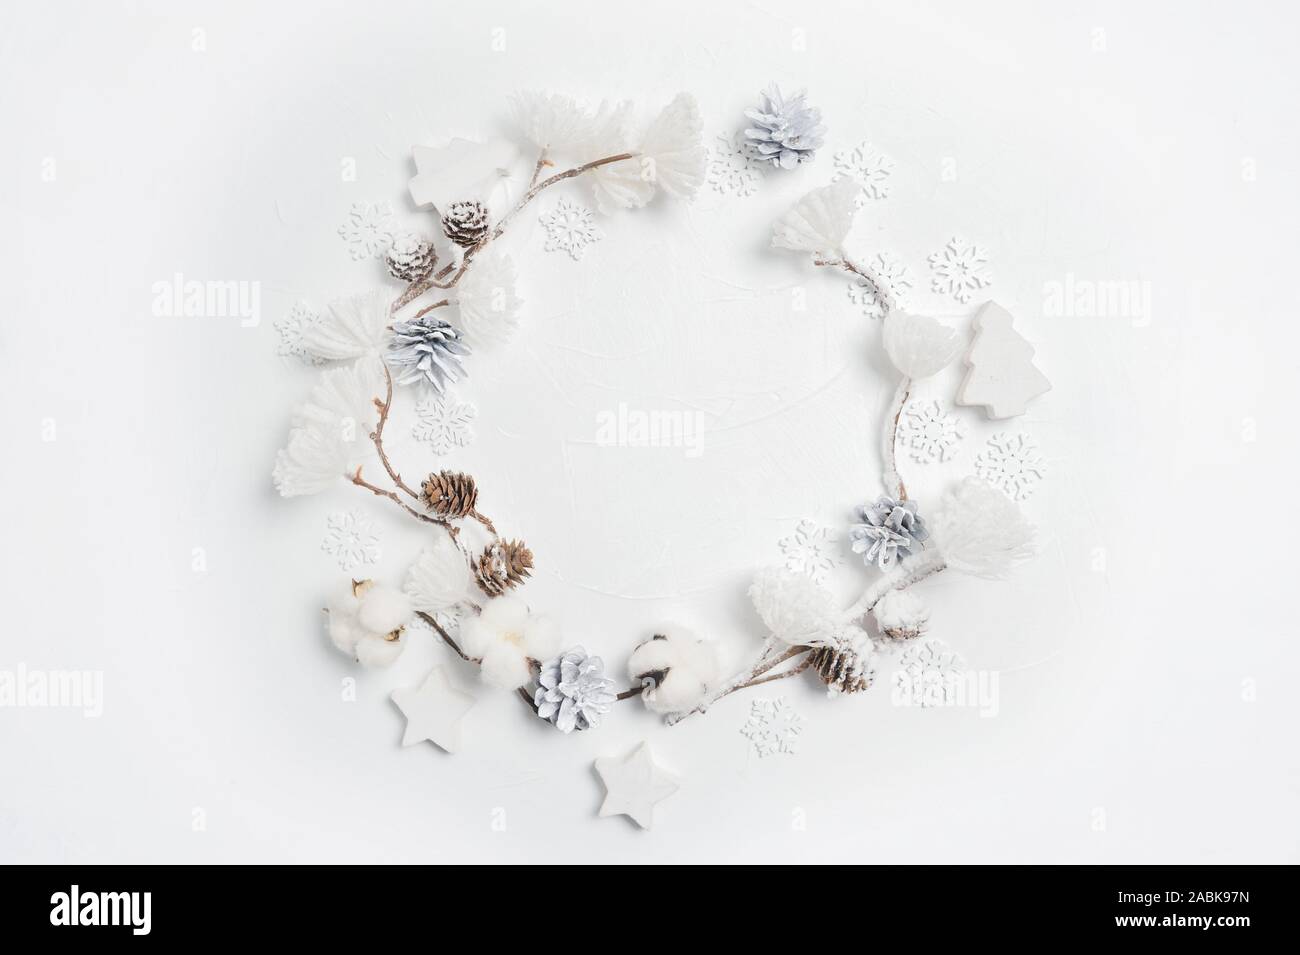 Corona de Navidad hecha de copos de nieve de madera, algodón, flores, piñas y pompones de flores blancas. Fondo blanco. Sentar planas, vista superior Foto de stock